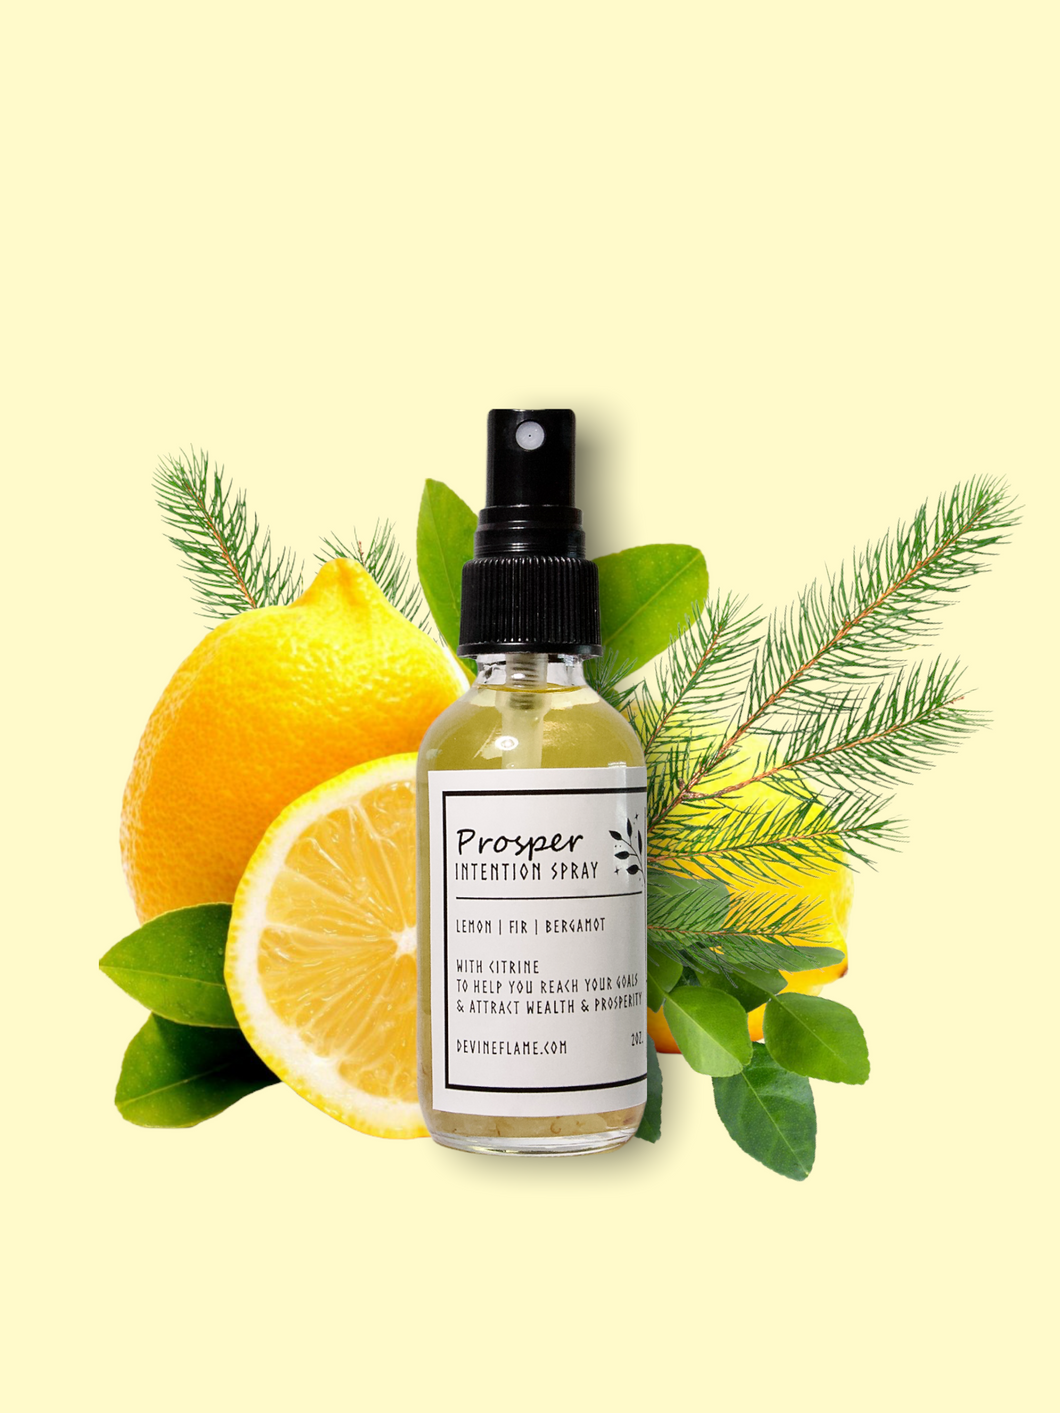 Prosper Intention Spray (Lemon, Bergamot, Fir & Citrine)